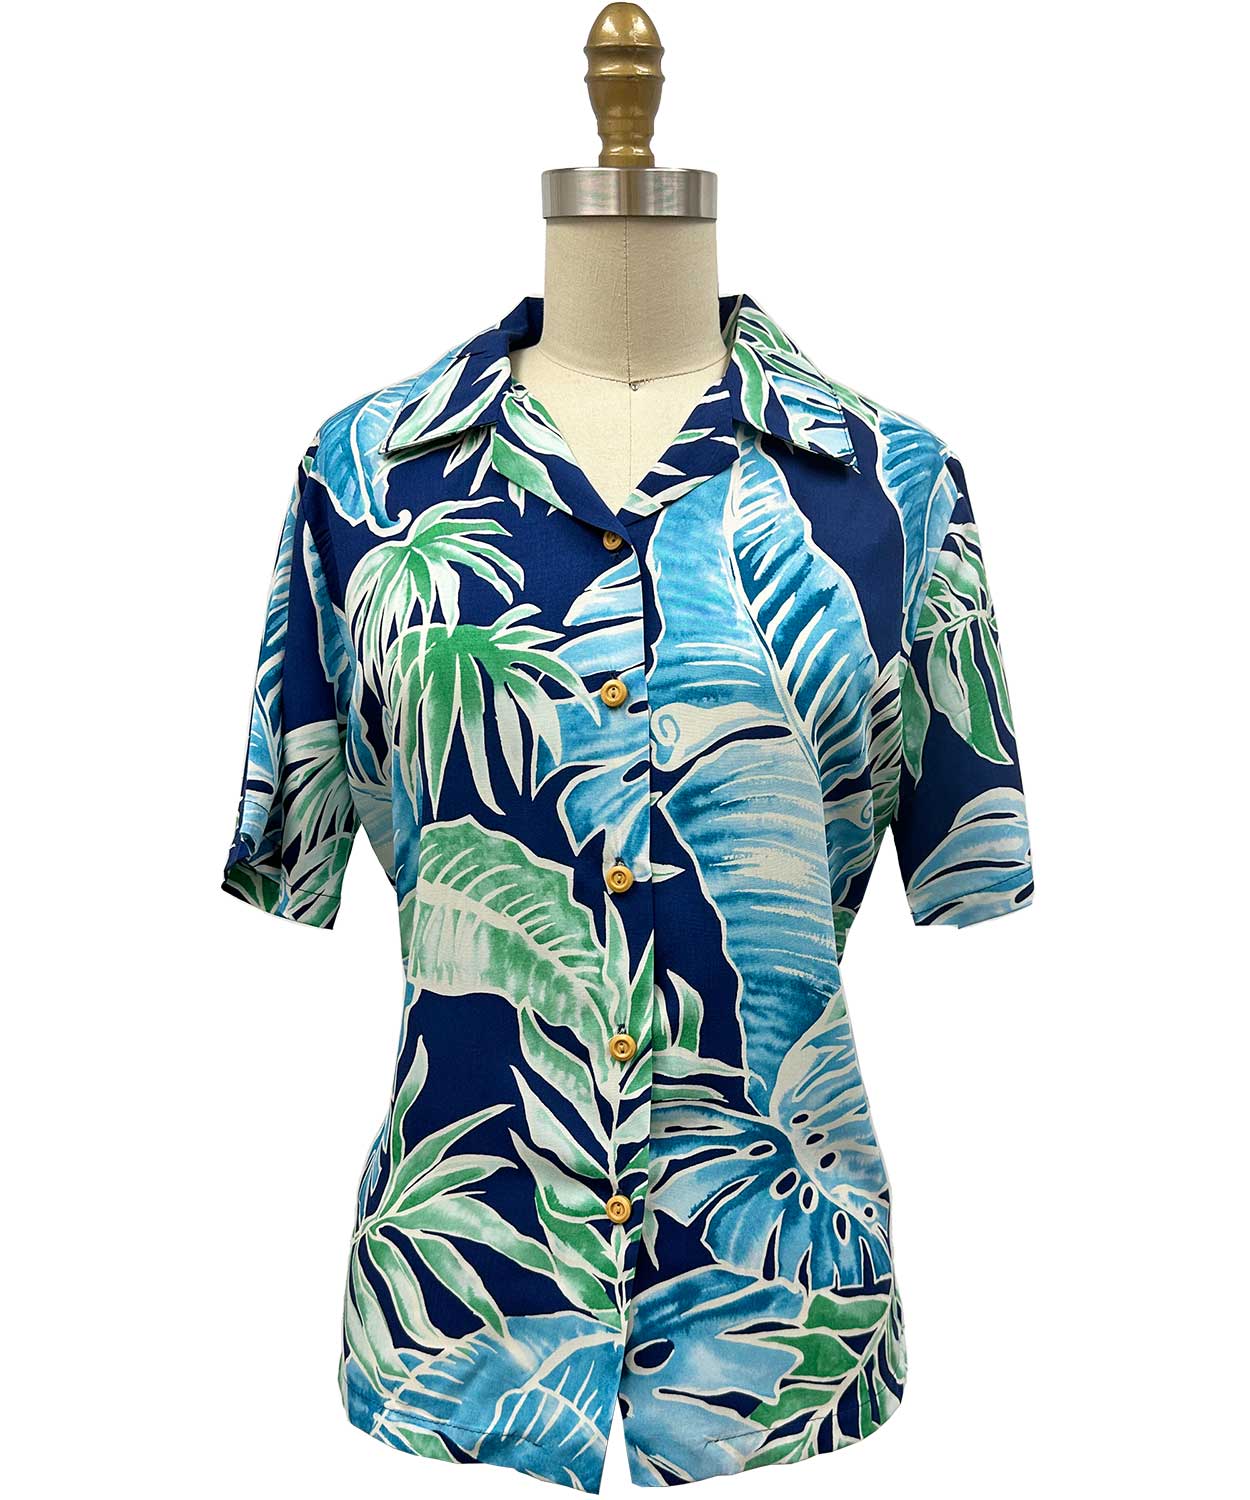 Women's Cabana Palms Navy Camp Shirt